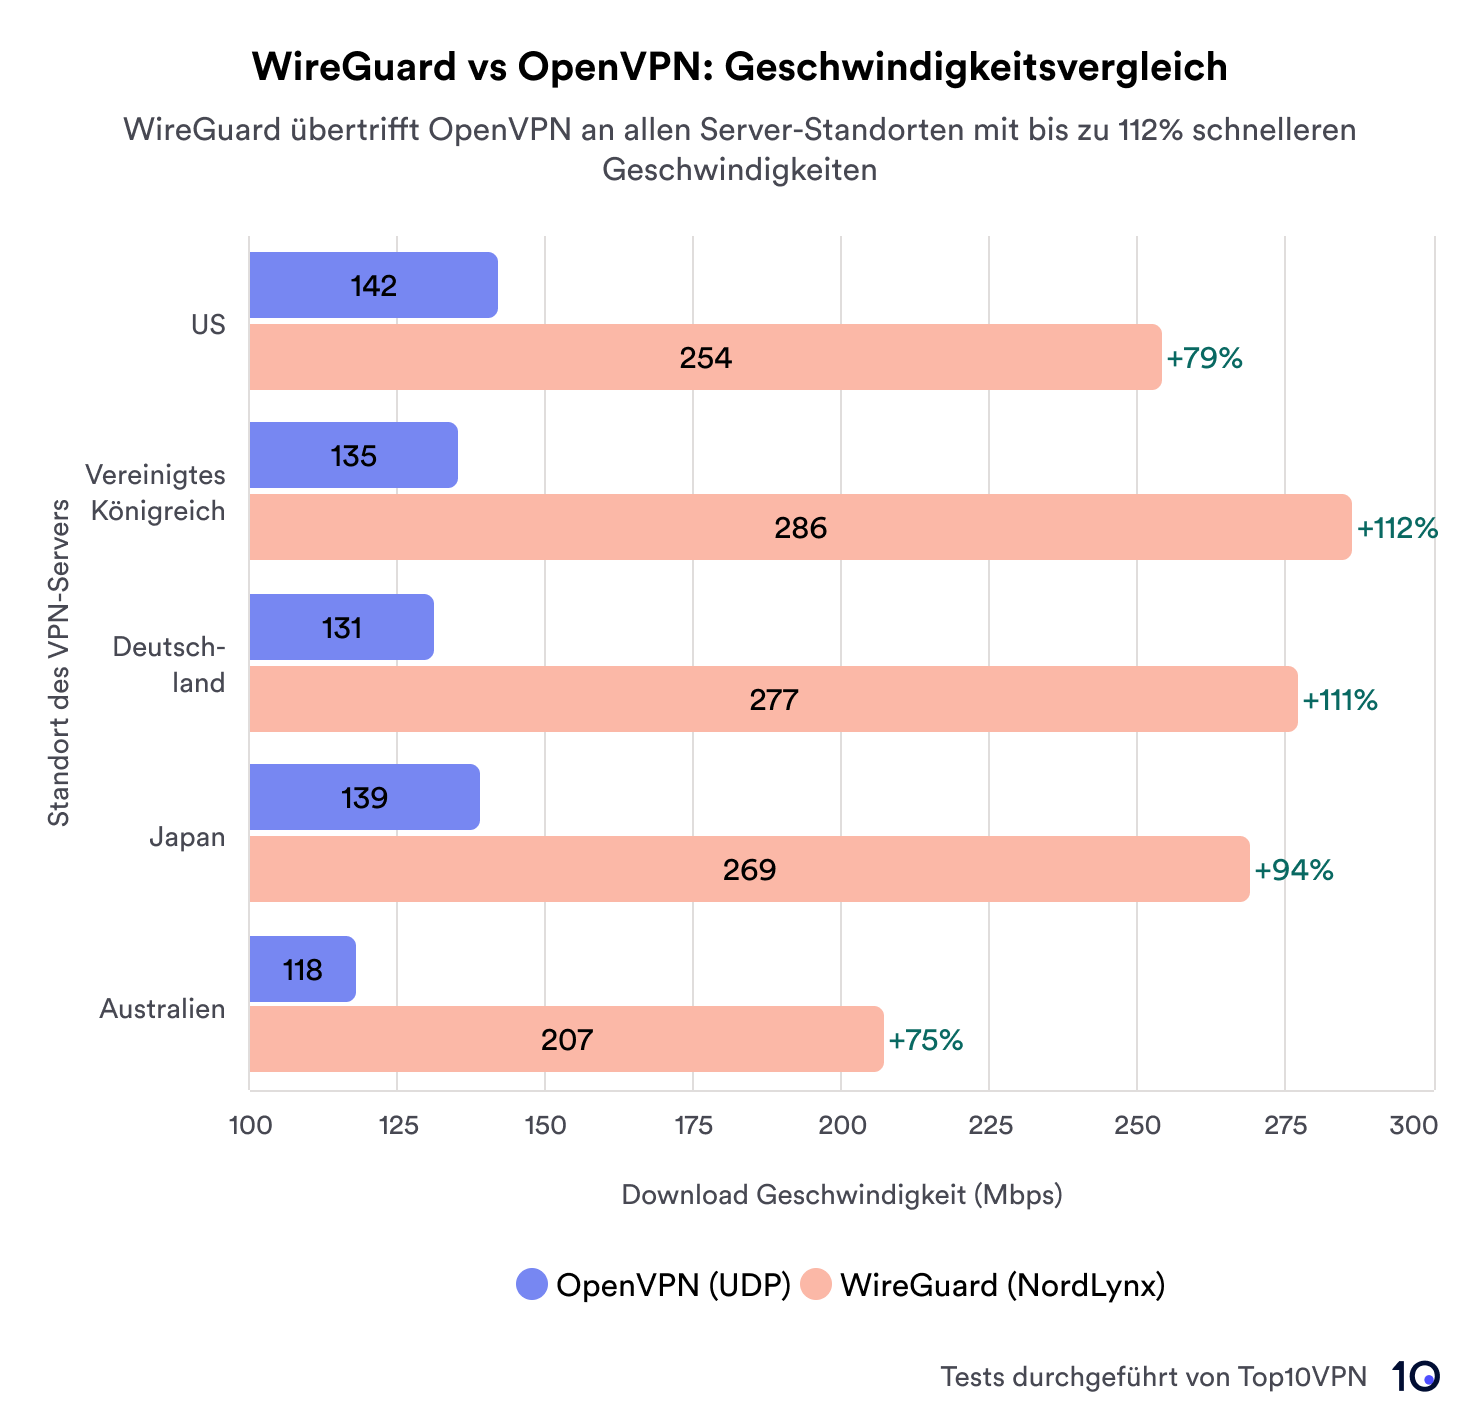 Balkeniagramm zum Vergleich der Downloadgeschwindigkeiten von WireGuard und OpenVPN über eine Reihe von Server-Standorten